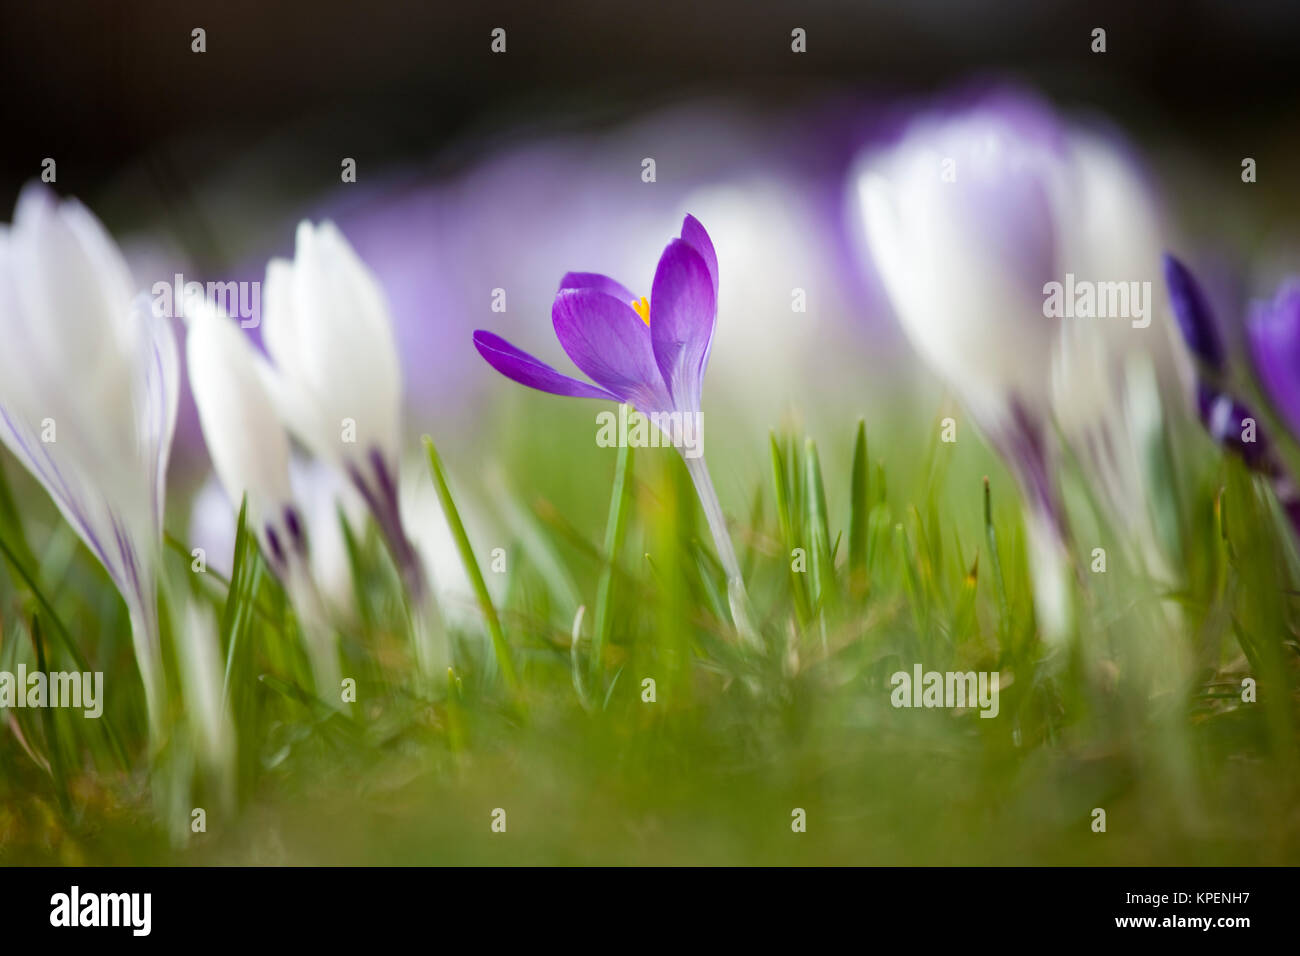 Krokus im Frühjahr und wolkenloser Himmel,nah fotografiert,Pflanzen im sonnigen Gegenlicht,a la de los varones und Farben Foto de stock